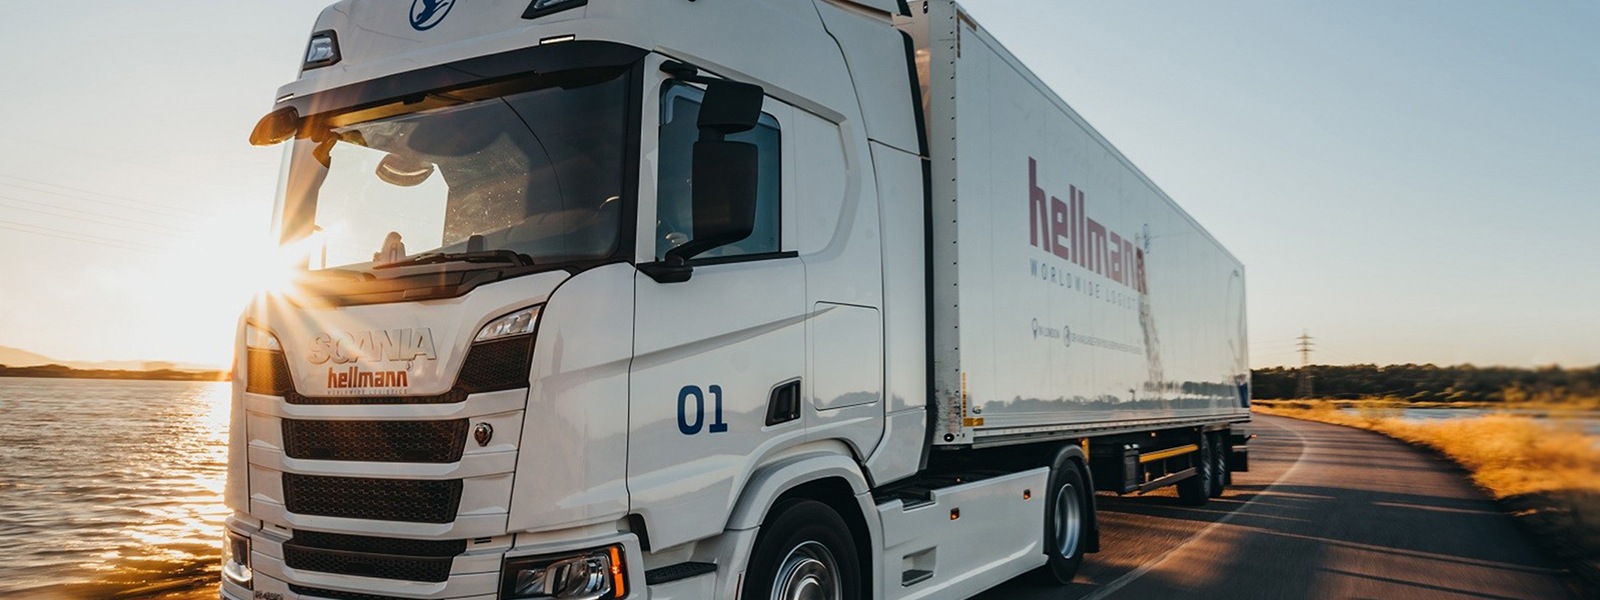 A Hellmann Worldwide Logistics truck on an open road.